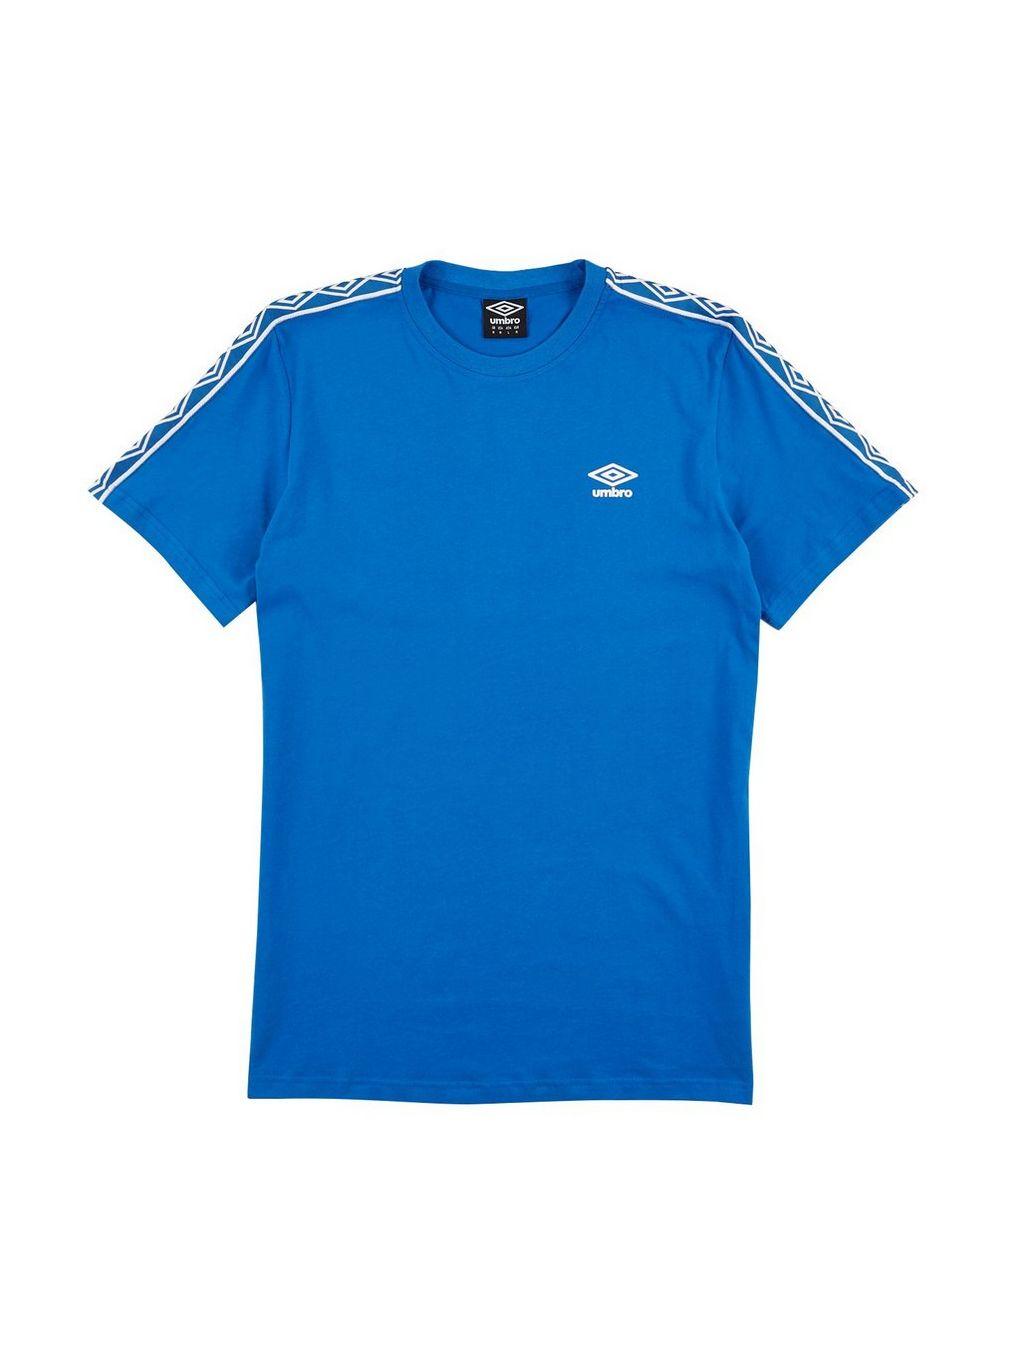 Retro Clothing Logo - Umbro Blue Retro Logo T-Shirt* - T-Shirts & Vests - Clothing ...